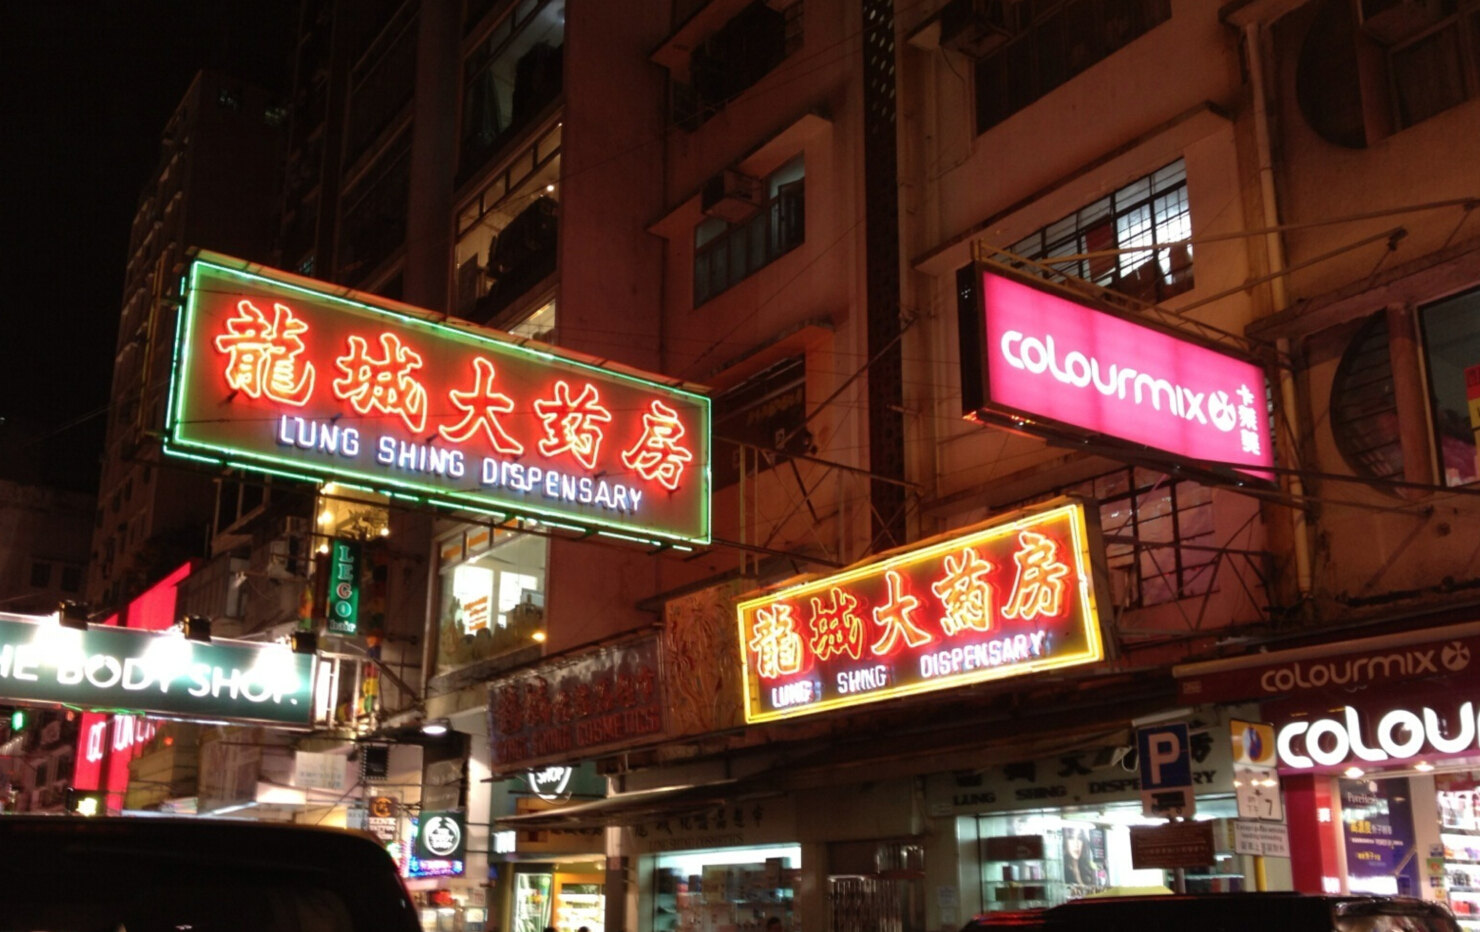 【携程攻略】香港龙城大药房购物,因为怕在香港买到假货,所以特意去了